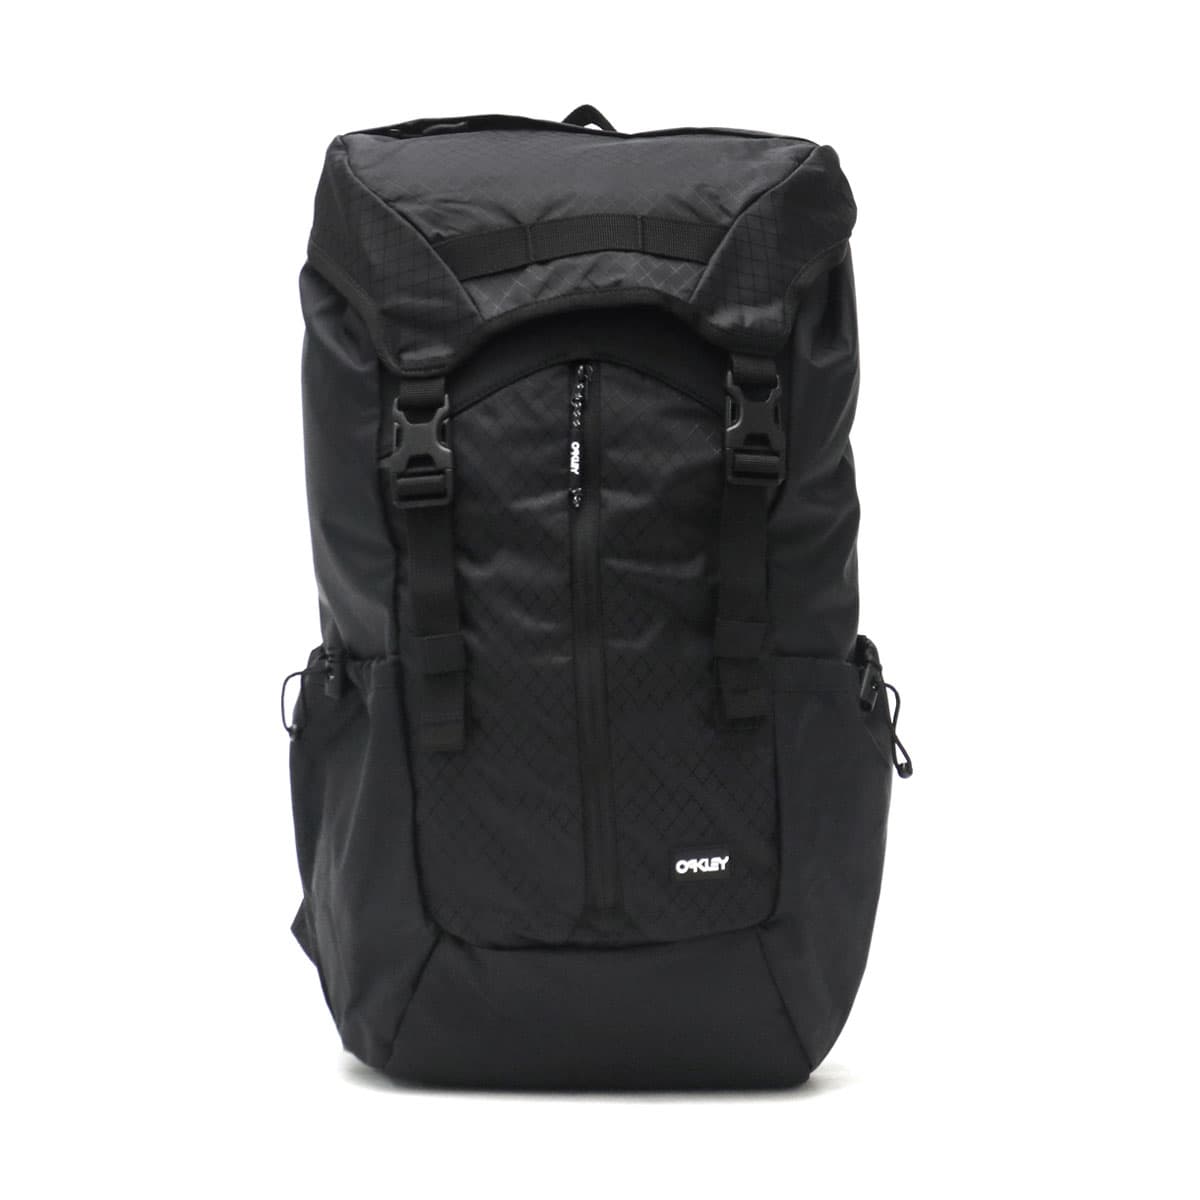 OAKLEY オークリー Voyager Backpack バックパック 26L FOS900484 